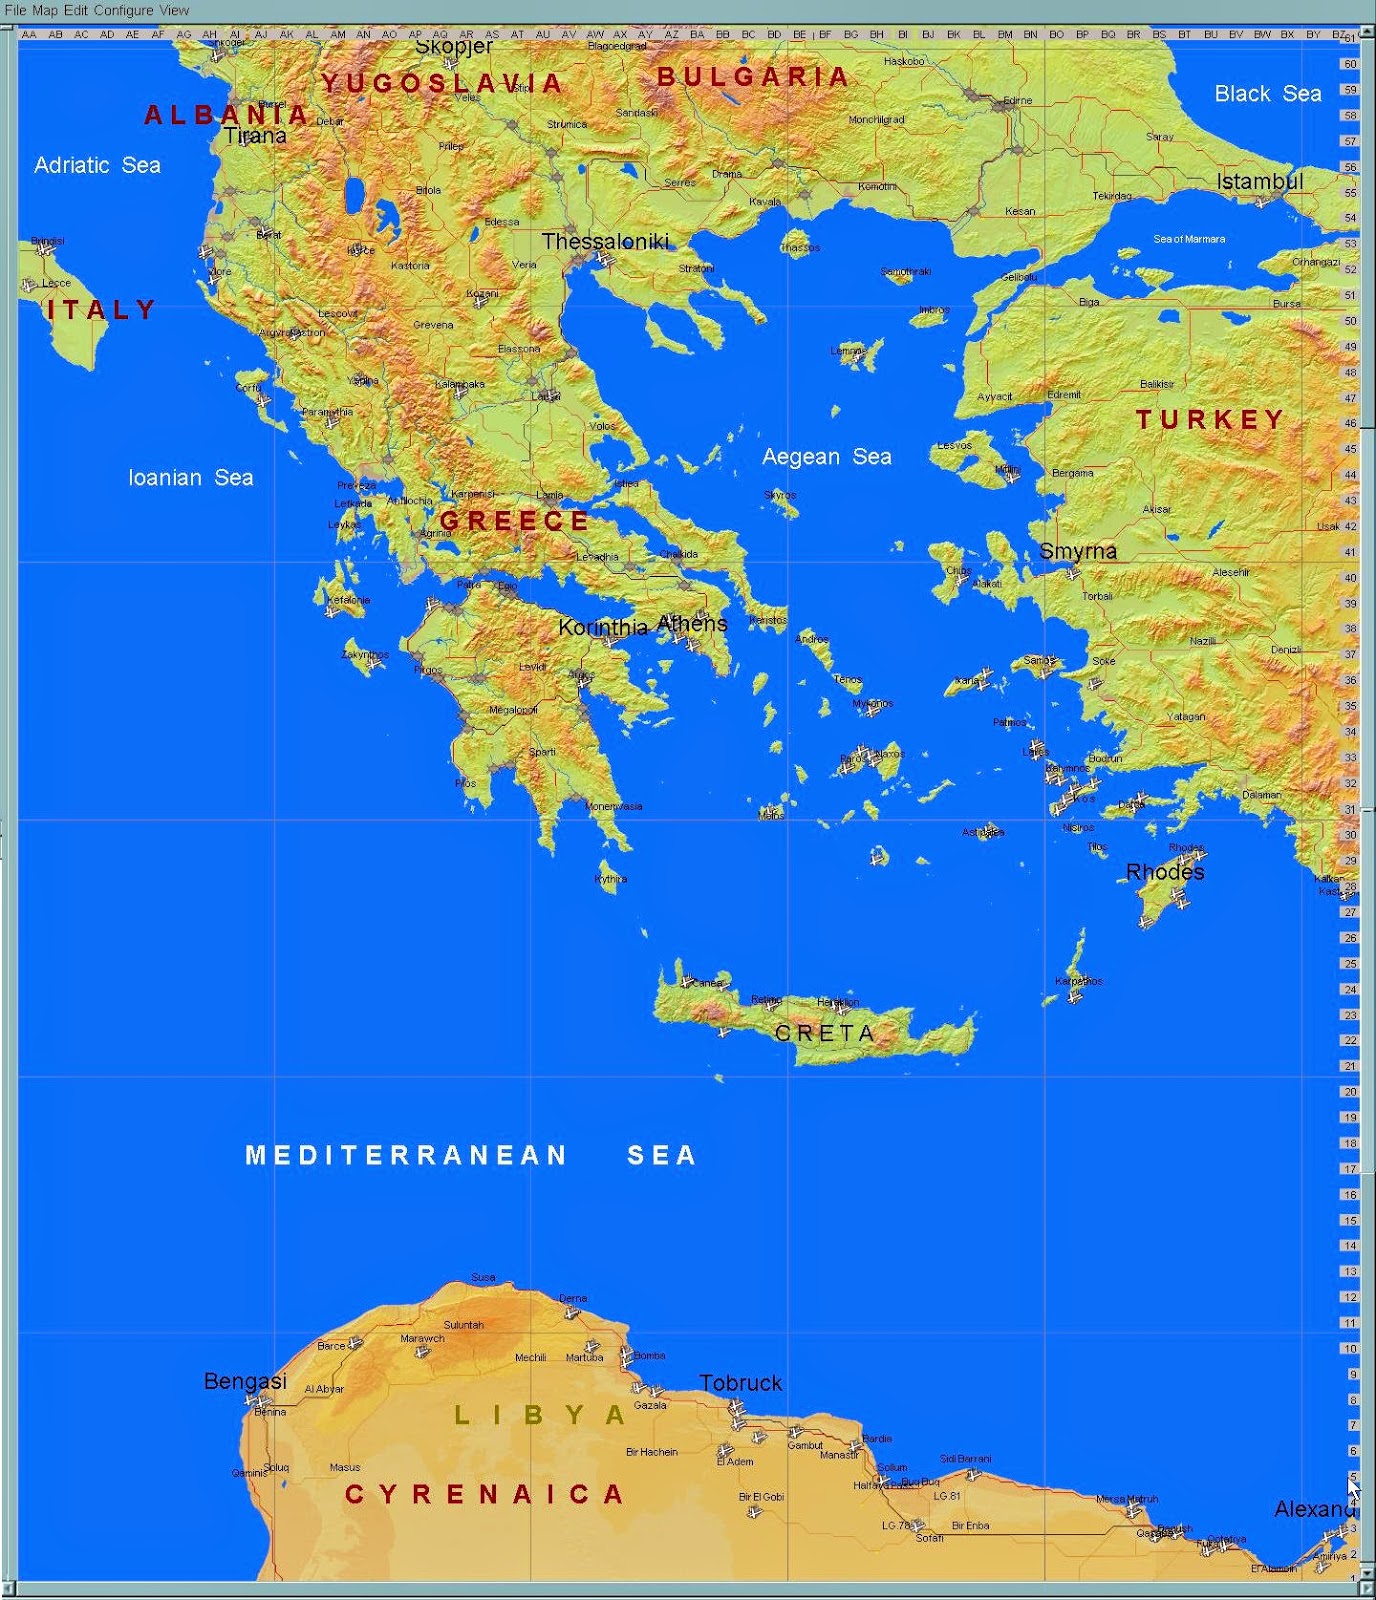 Grecia_Africa+mapa.JPG